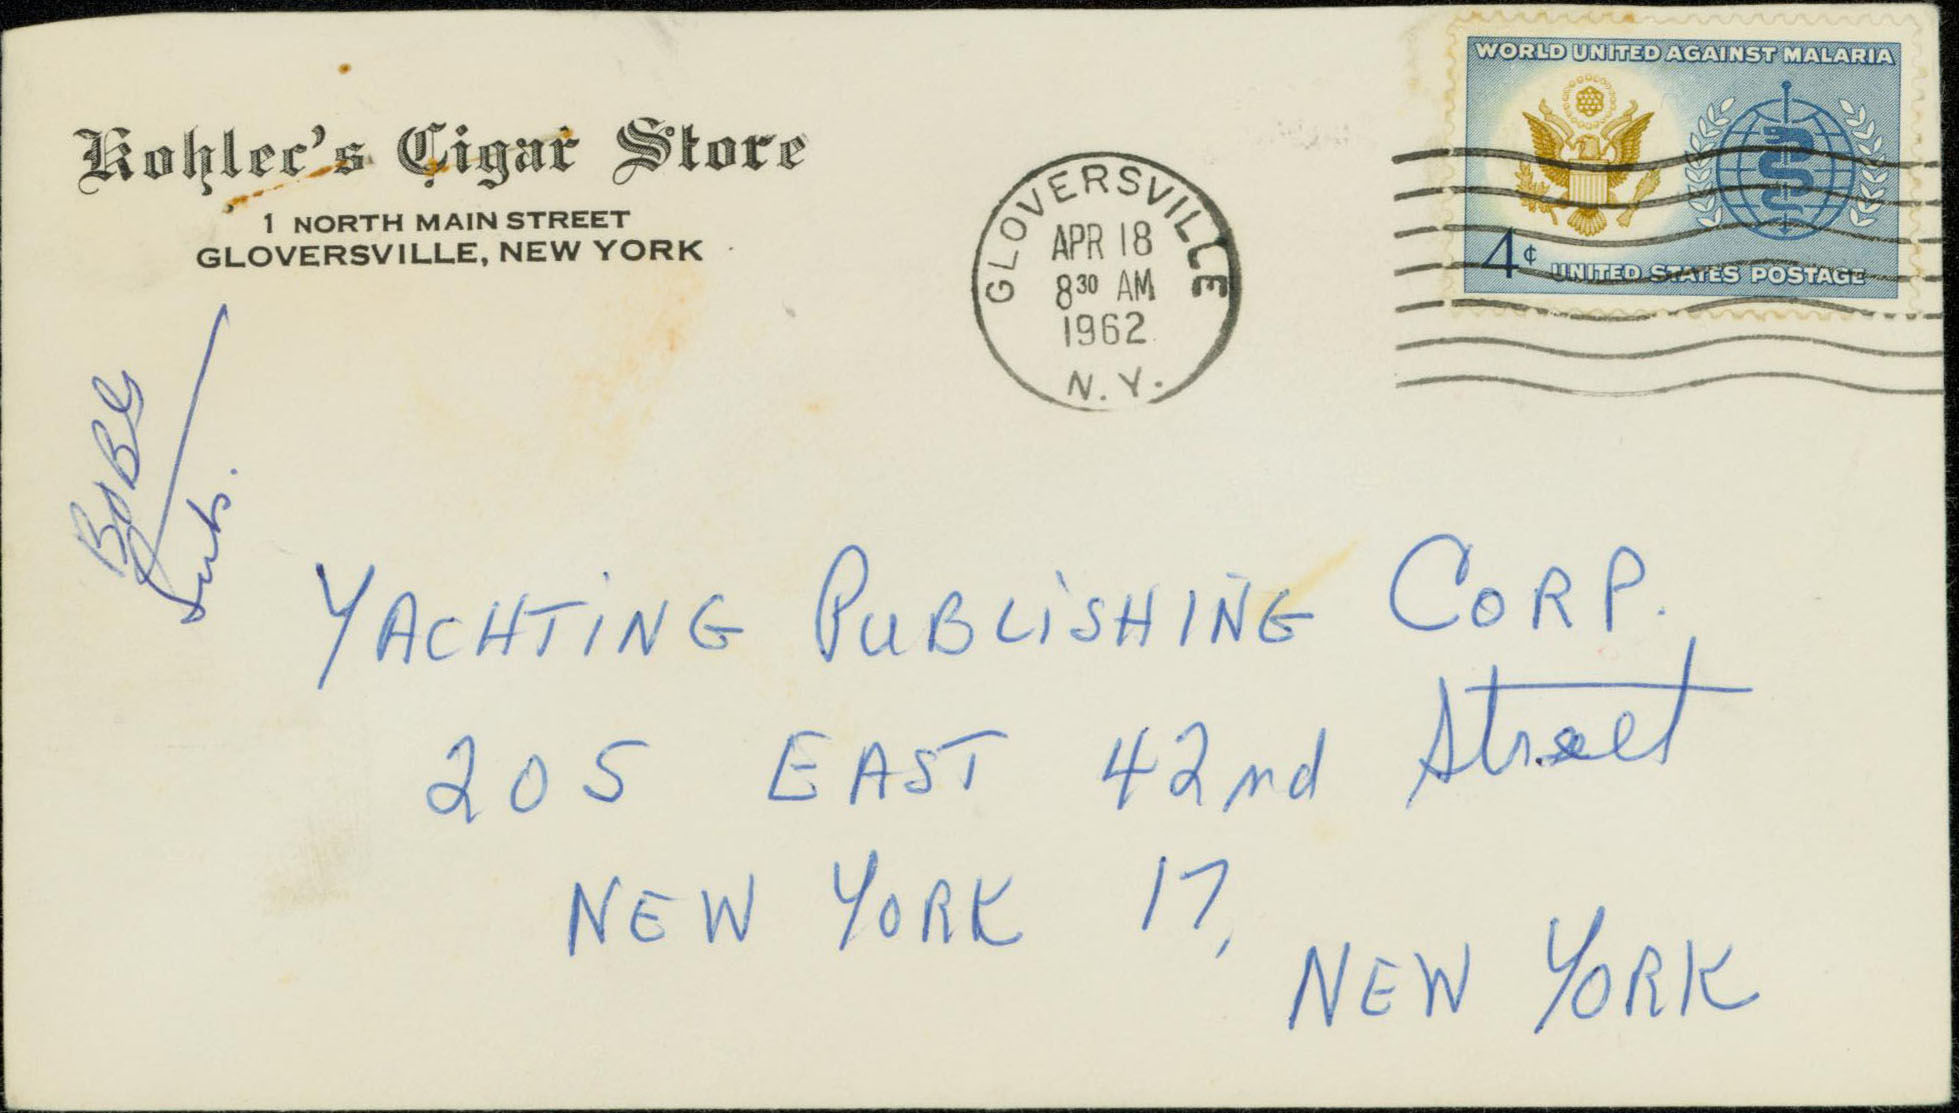 1962, April 18th 8:30 AM. Gloversville, NY to New York, NY